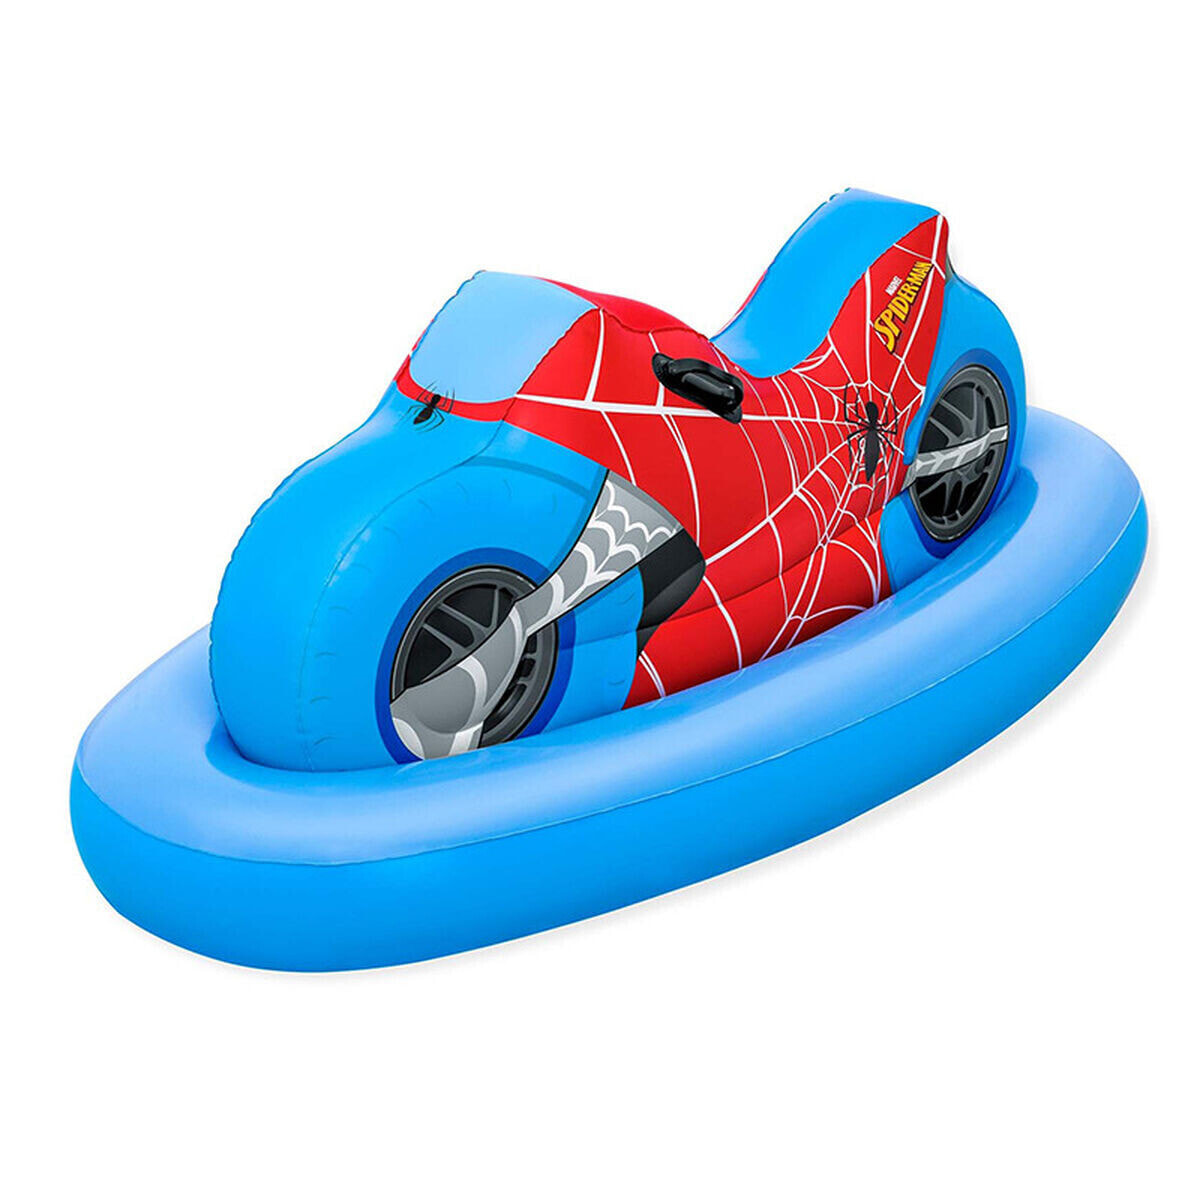 Air mattress Bestway Spiderman Motorbike 170 x 84 cm